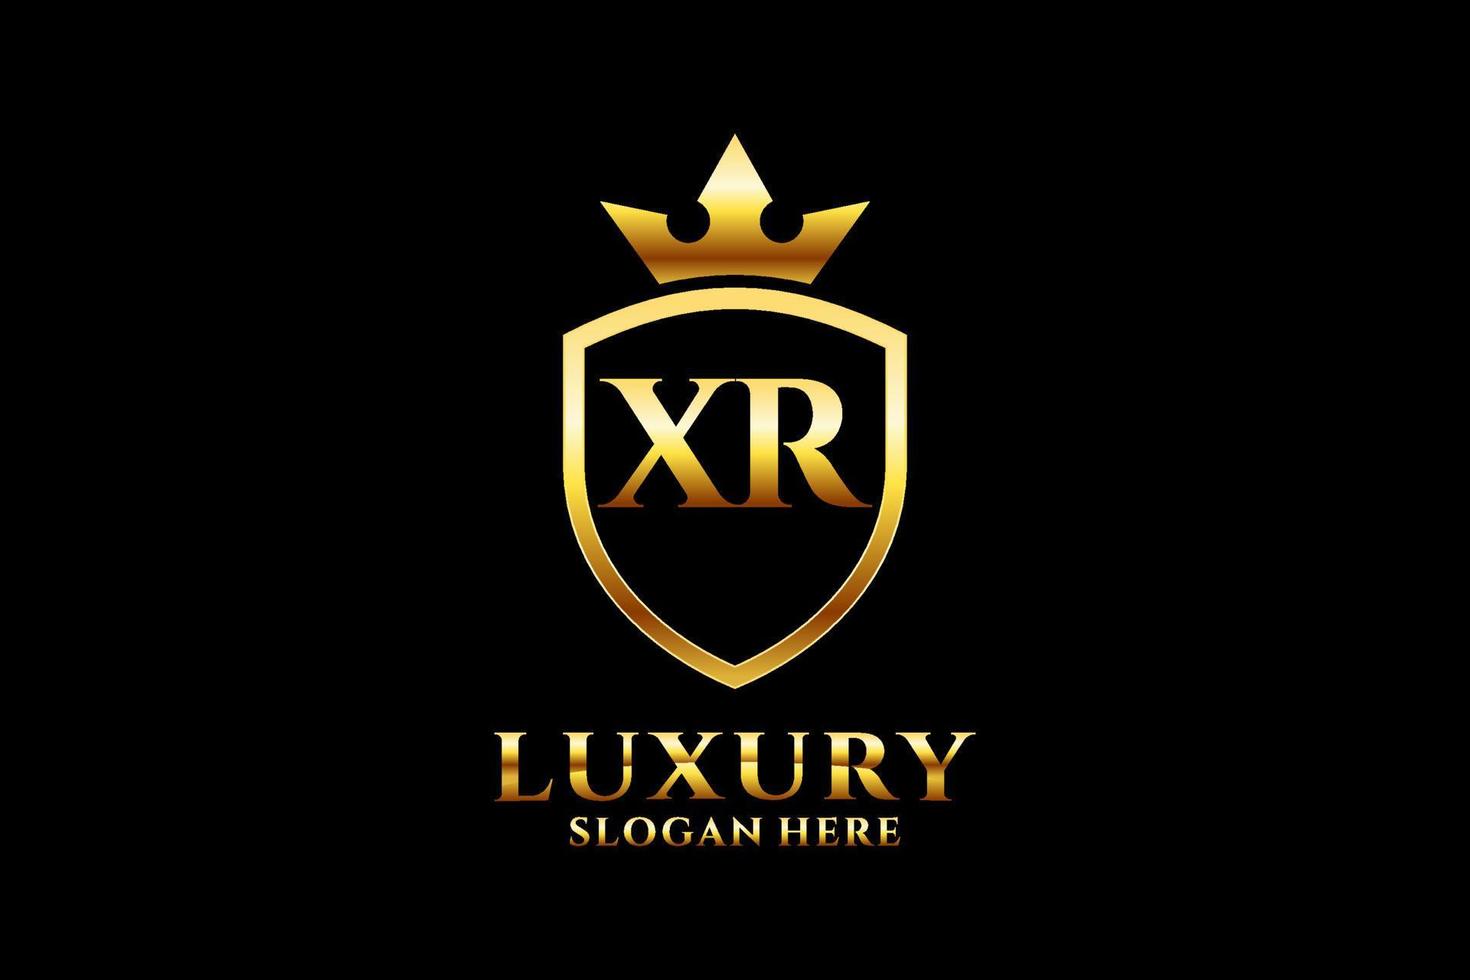 första xr elegant lyx monogram logotyp eller bricka mall med rullar och kunglig krona - perfekt för lyxig branding projekt vektor